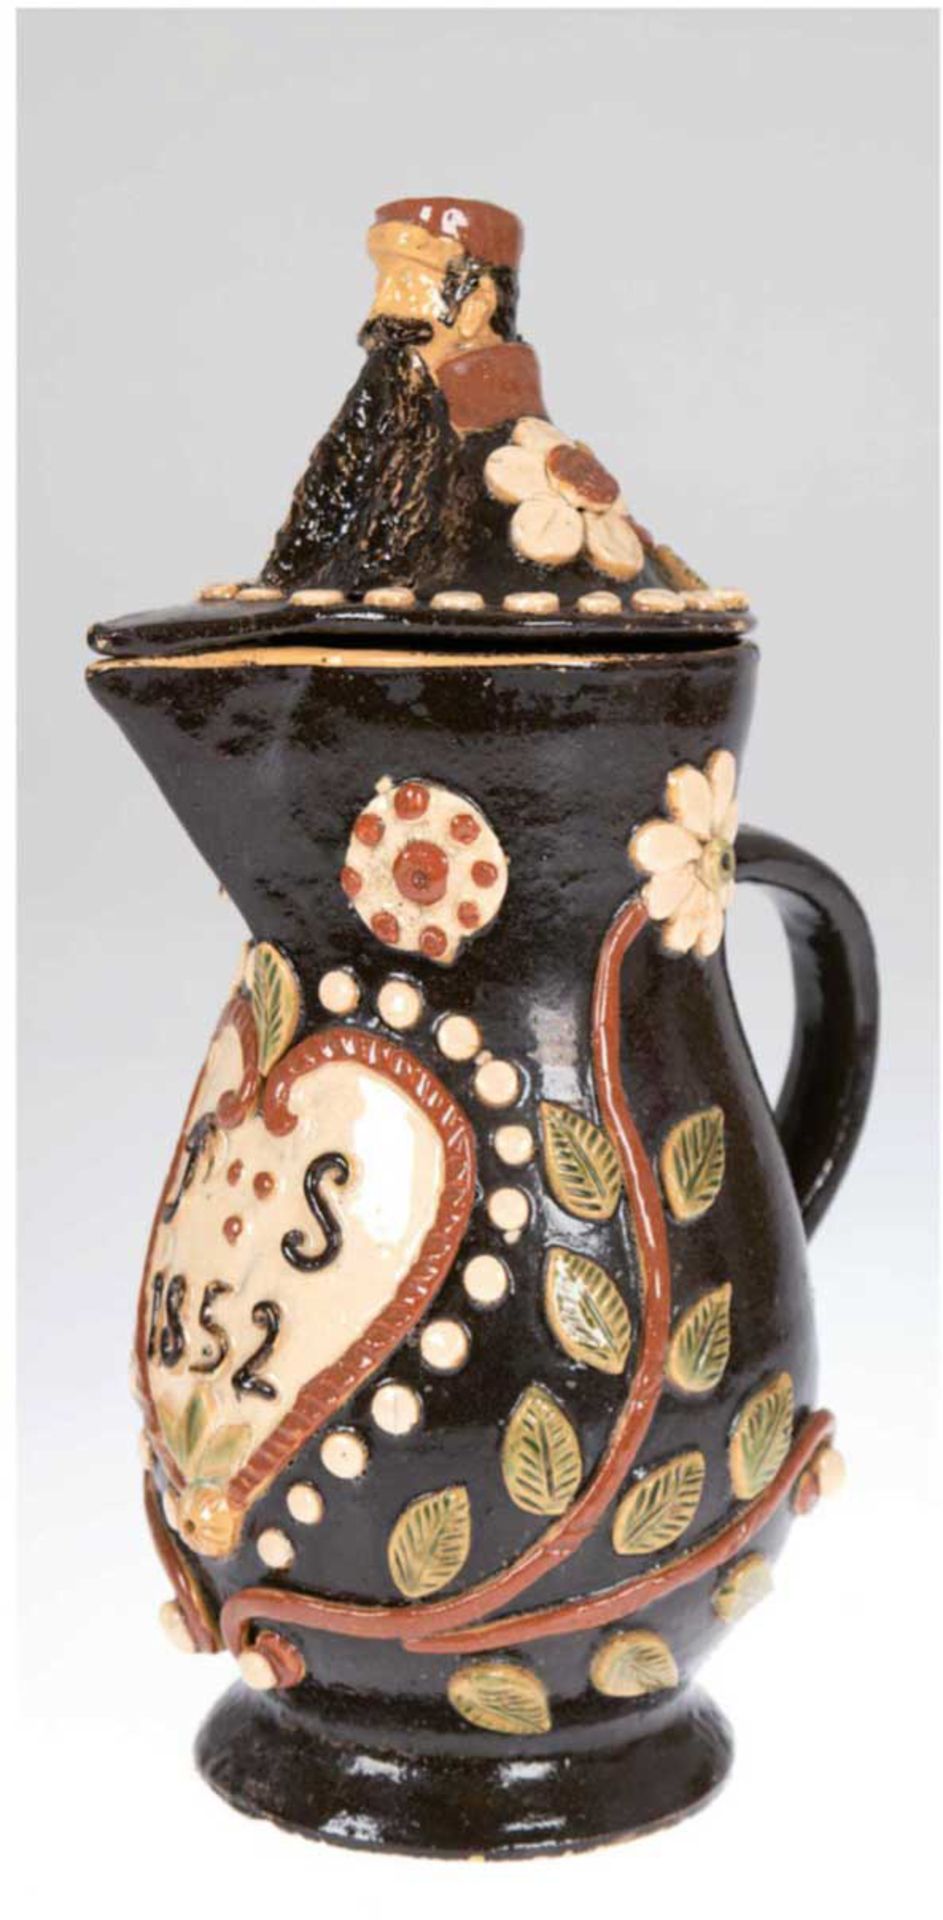 Deckel-Krug, Marburg oder Werratal, Keramik, dunkelbraun bzw. cremefarben glasiert,birnenförmig